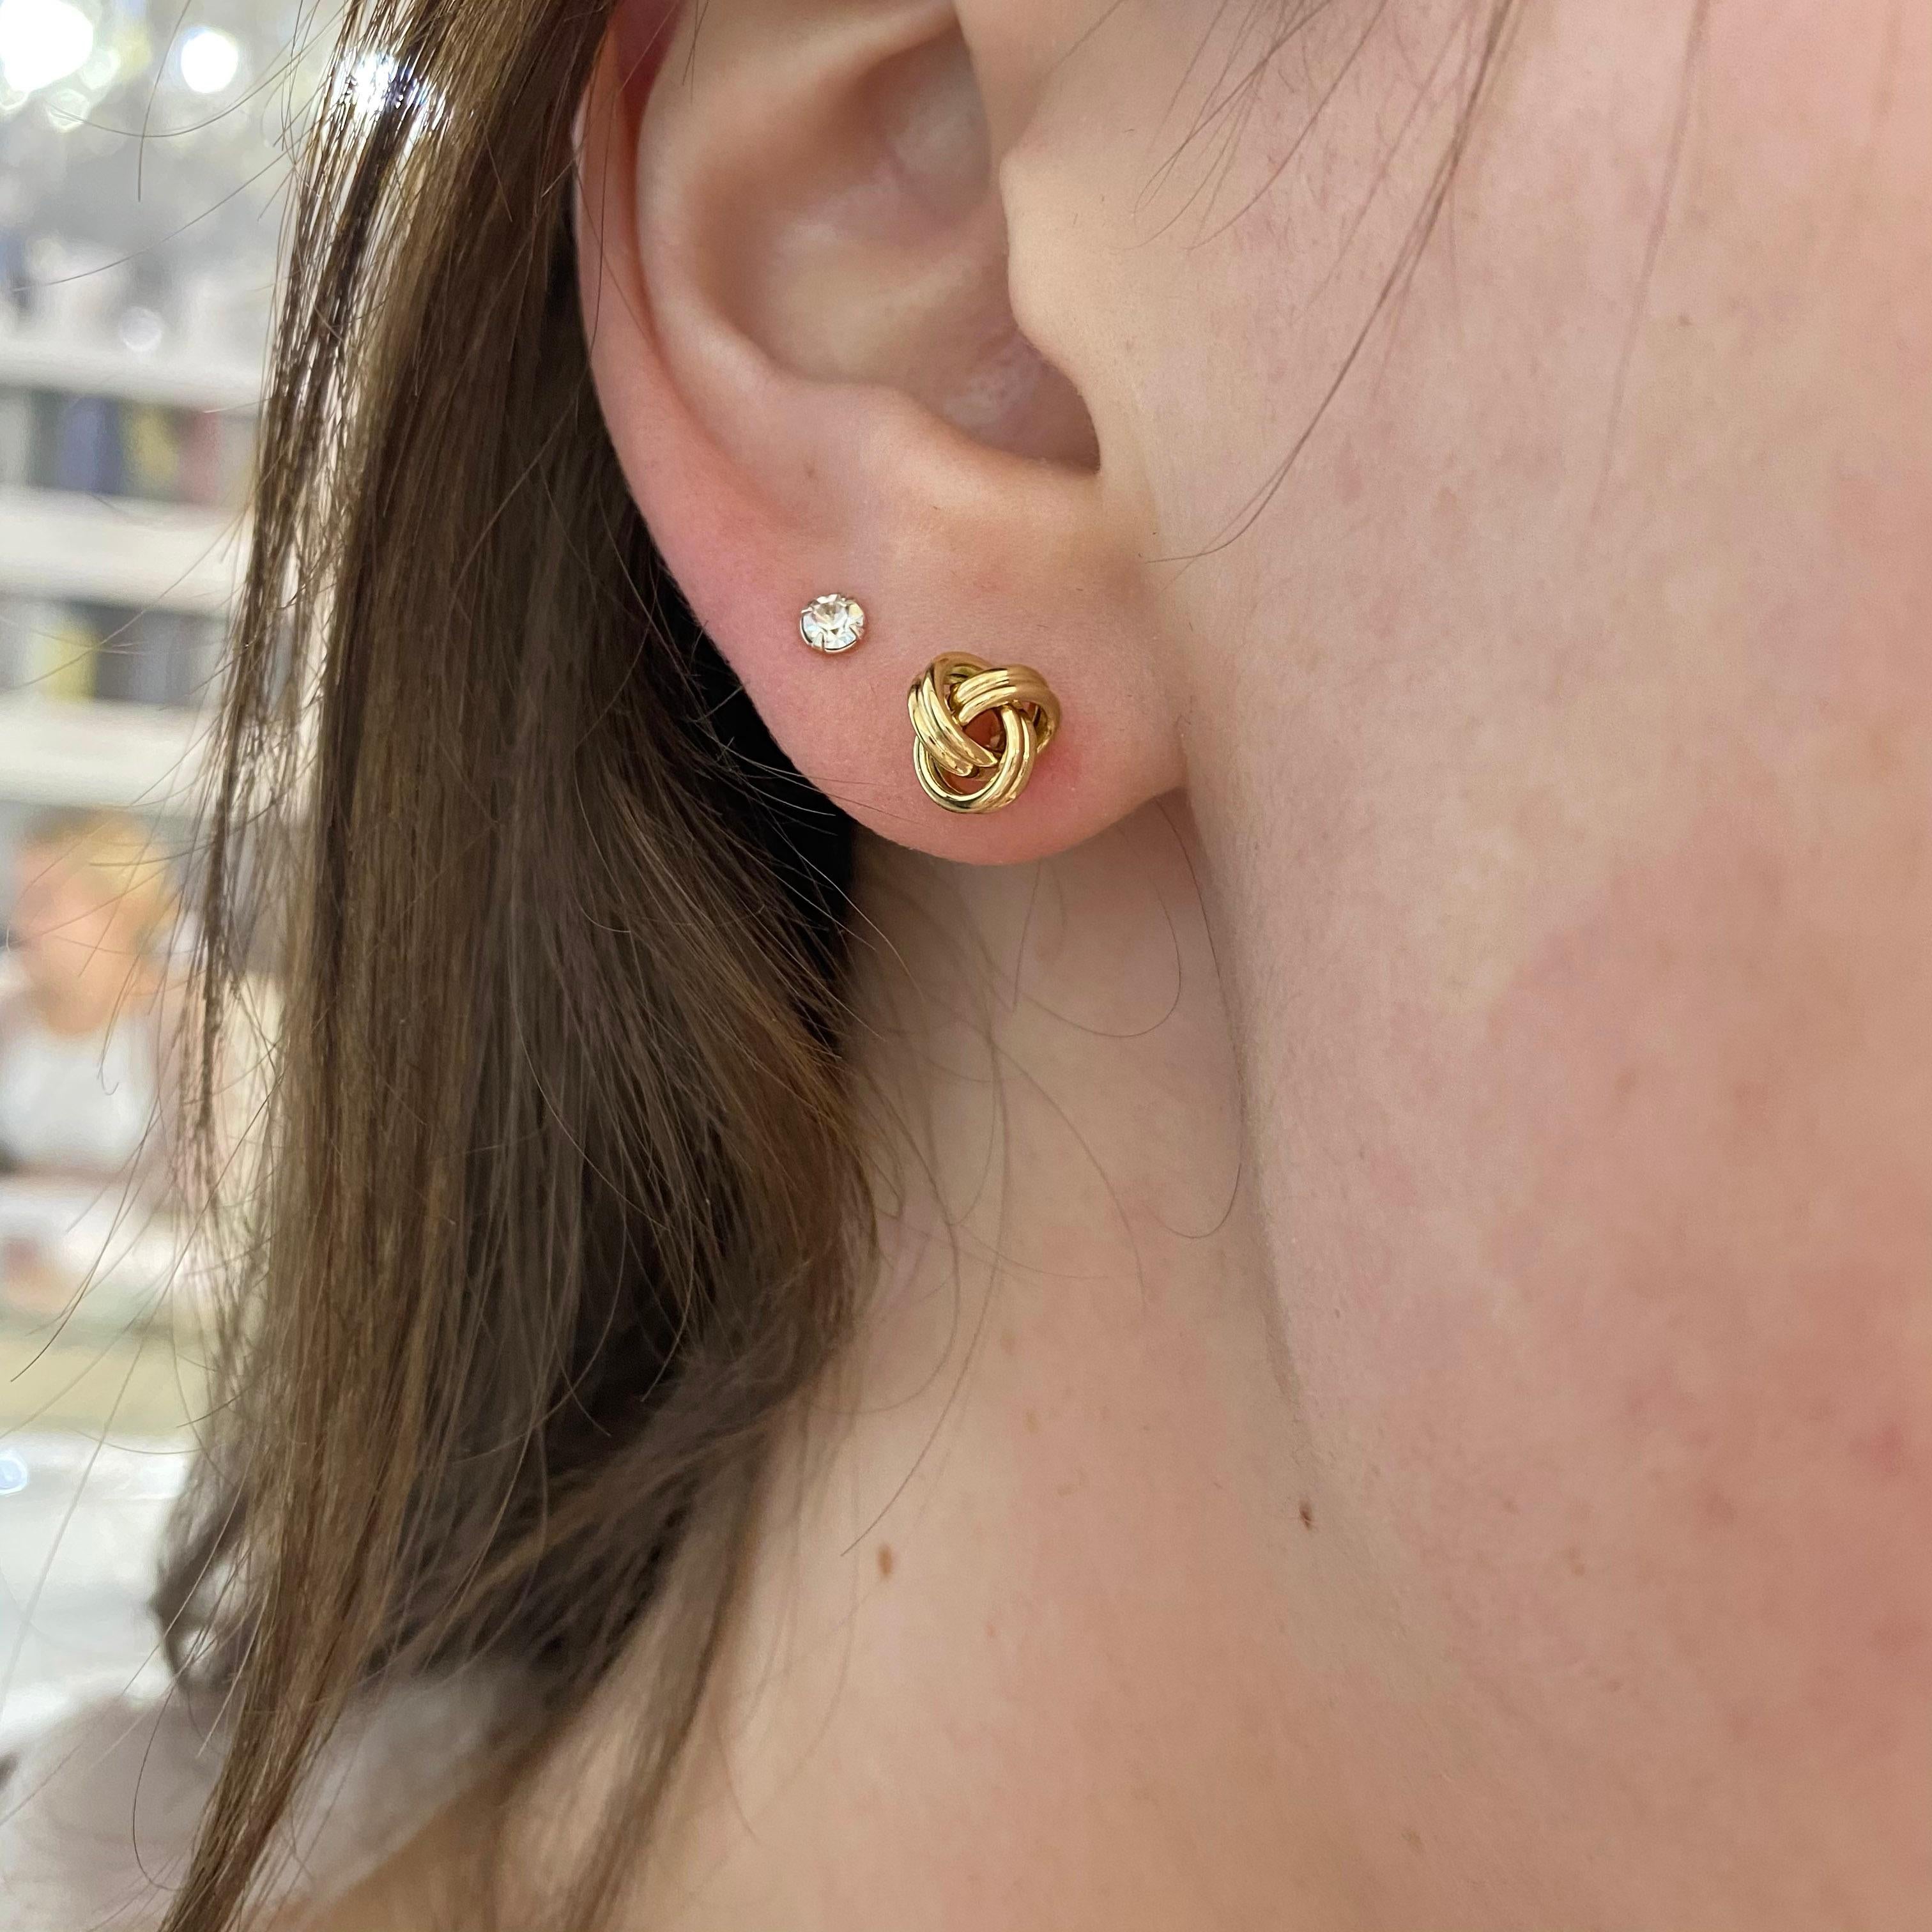 $14 cartier earrings